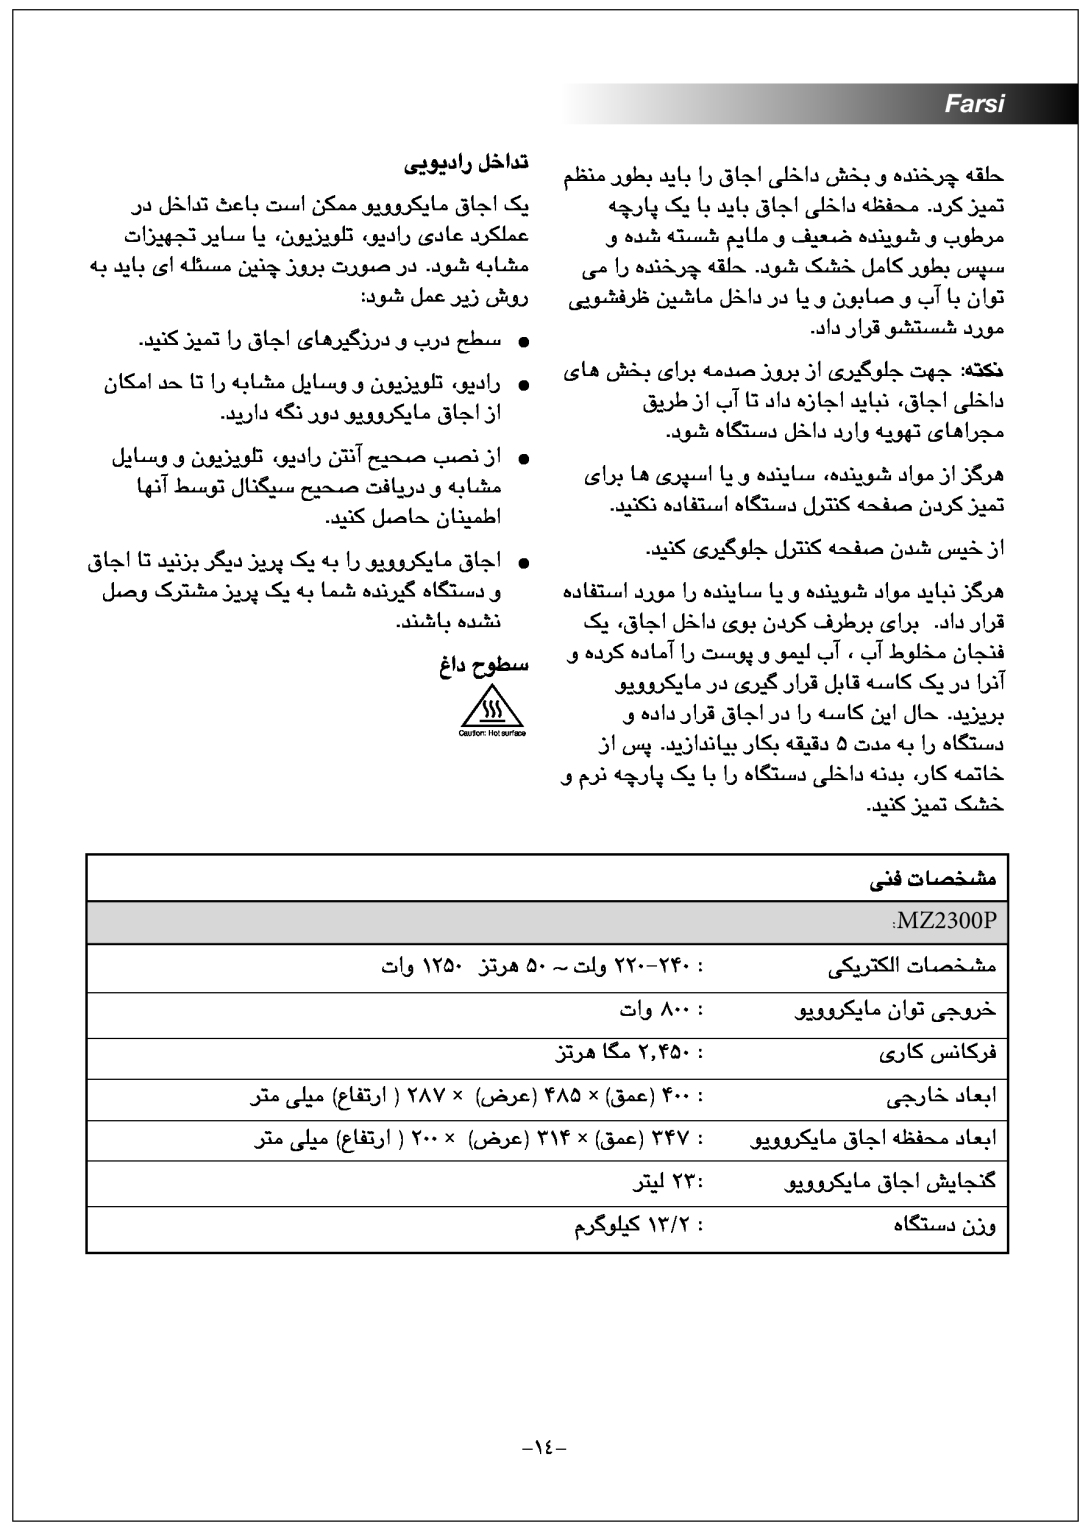 Black & Decker MZ2300P manual ﯽﯾﻮﯾﺩﺍﺭ ﻞﺧﺍﺪﺗ, ﻍﺍﺩ ﺡﻮﻄﺳ, Farsi, ﯽﻨﻓ ﺕﺎﺼﺨﺸﻣ, ﺰﺗﺮﻫ ۵۰ ~ ﺖﻟﻭ, ﺽﺮﻋ ۴۸۵ × ﻖﻤﻋ, ﺽﺮﻋ ۳۱۴ × ﻖﻤﻋ 